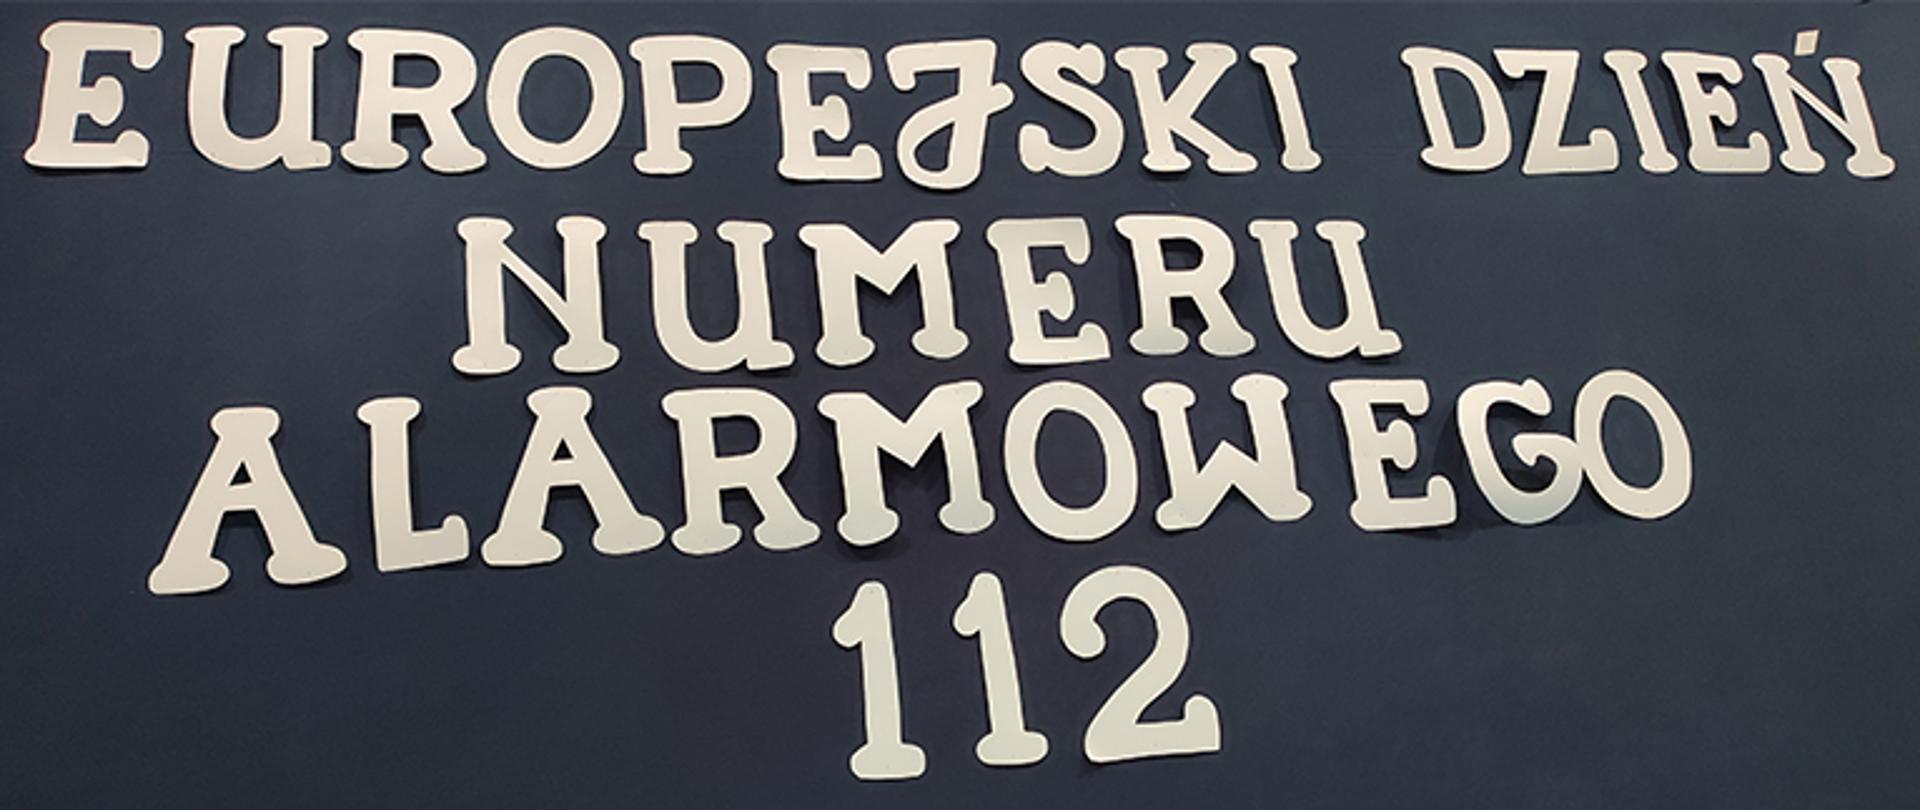 Tablica z ciemnym tłem z literami wyciętymi z papieru barwy białej z napisem Europejski Dzień Numeru Alarmowego 112